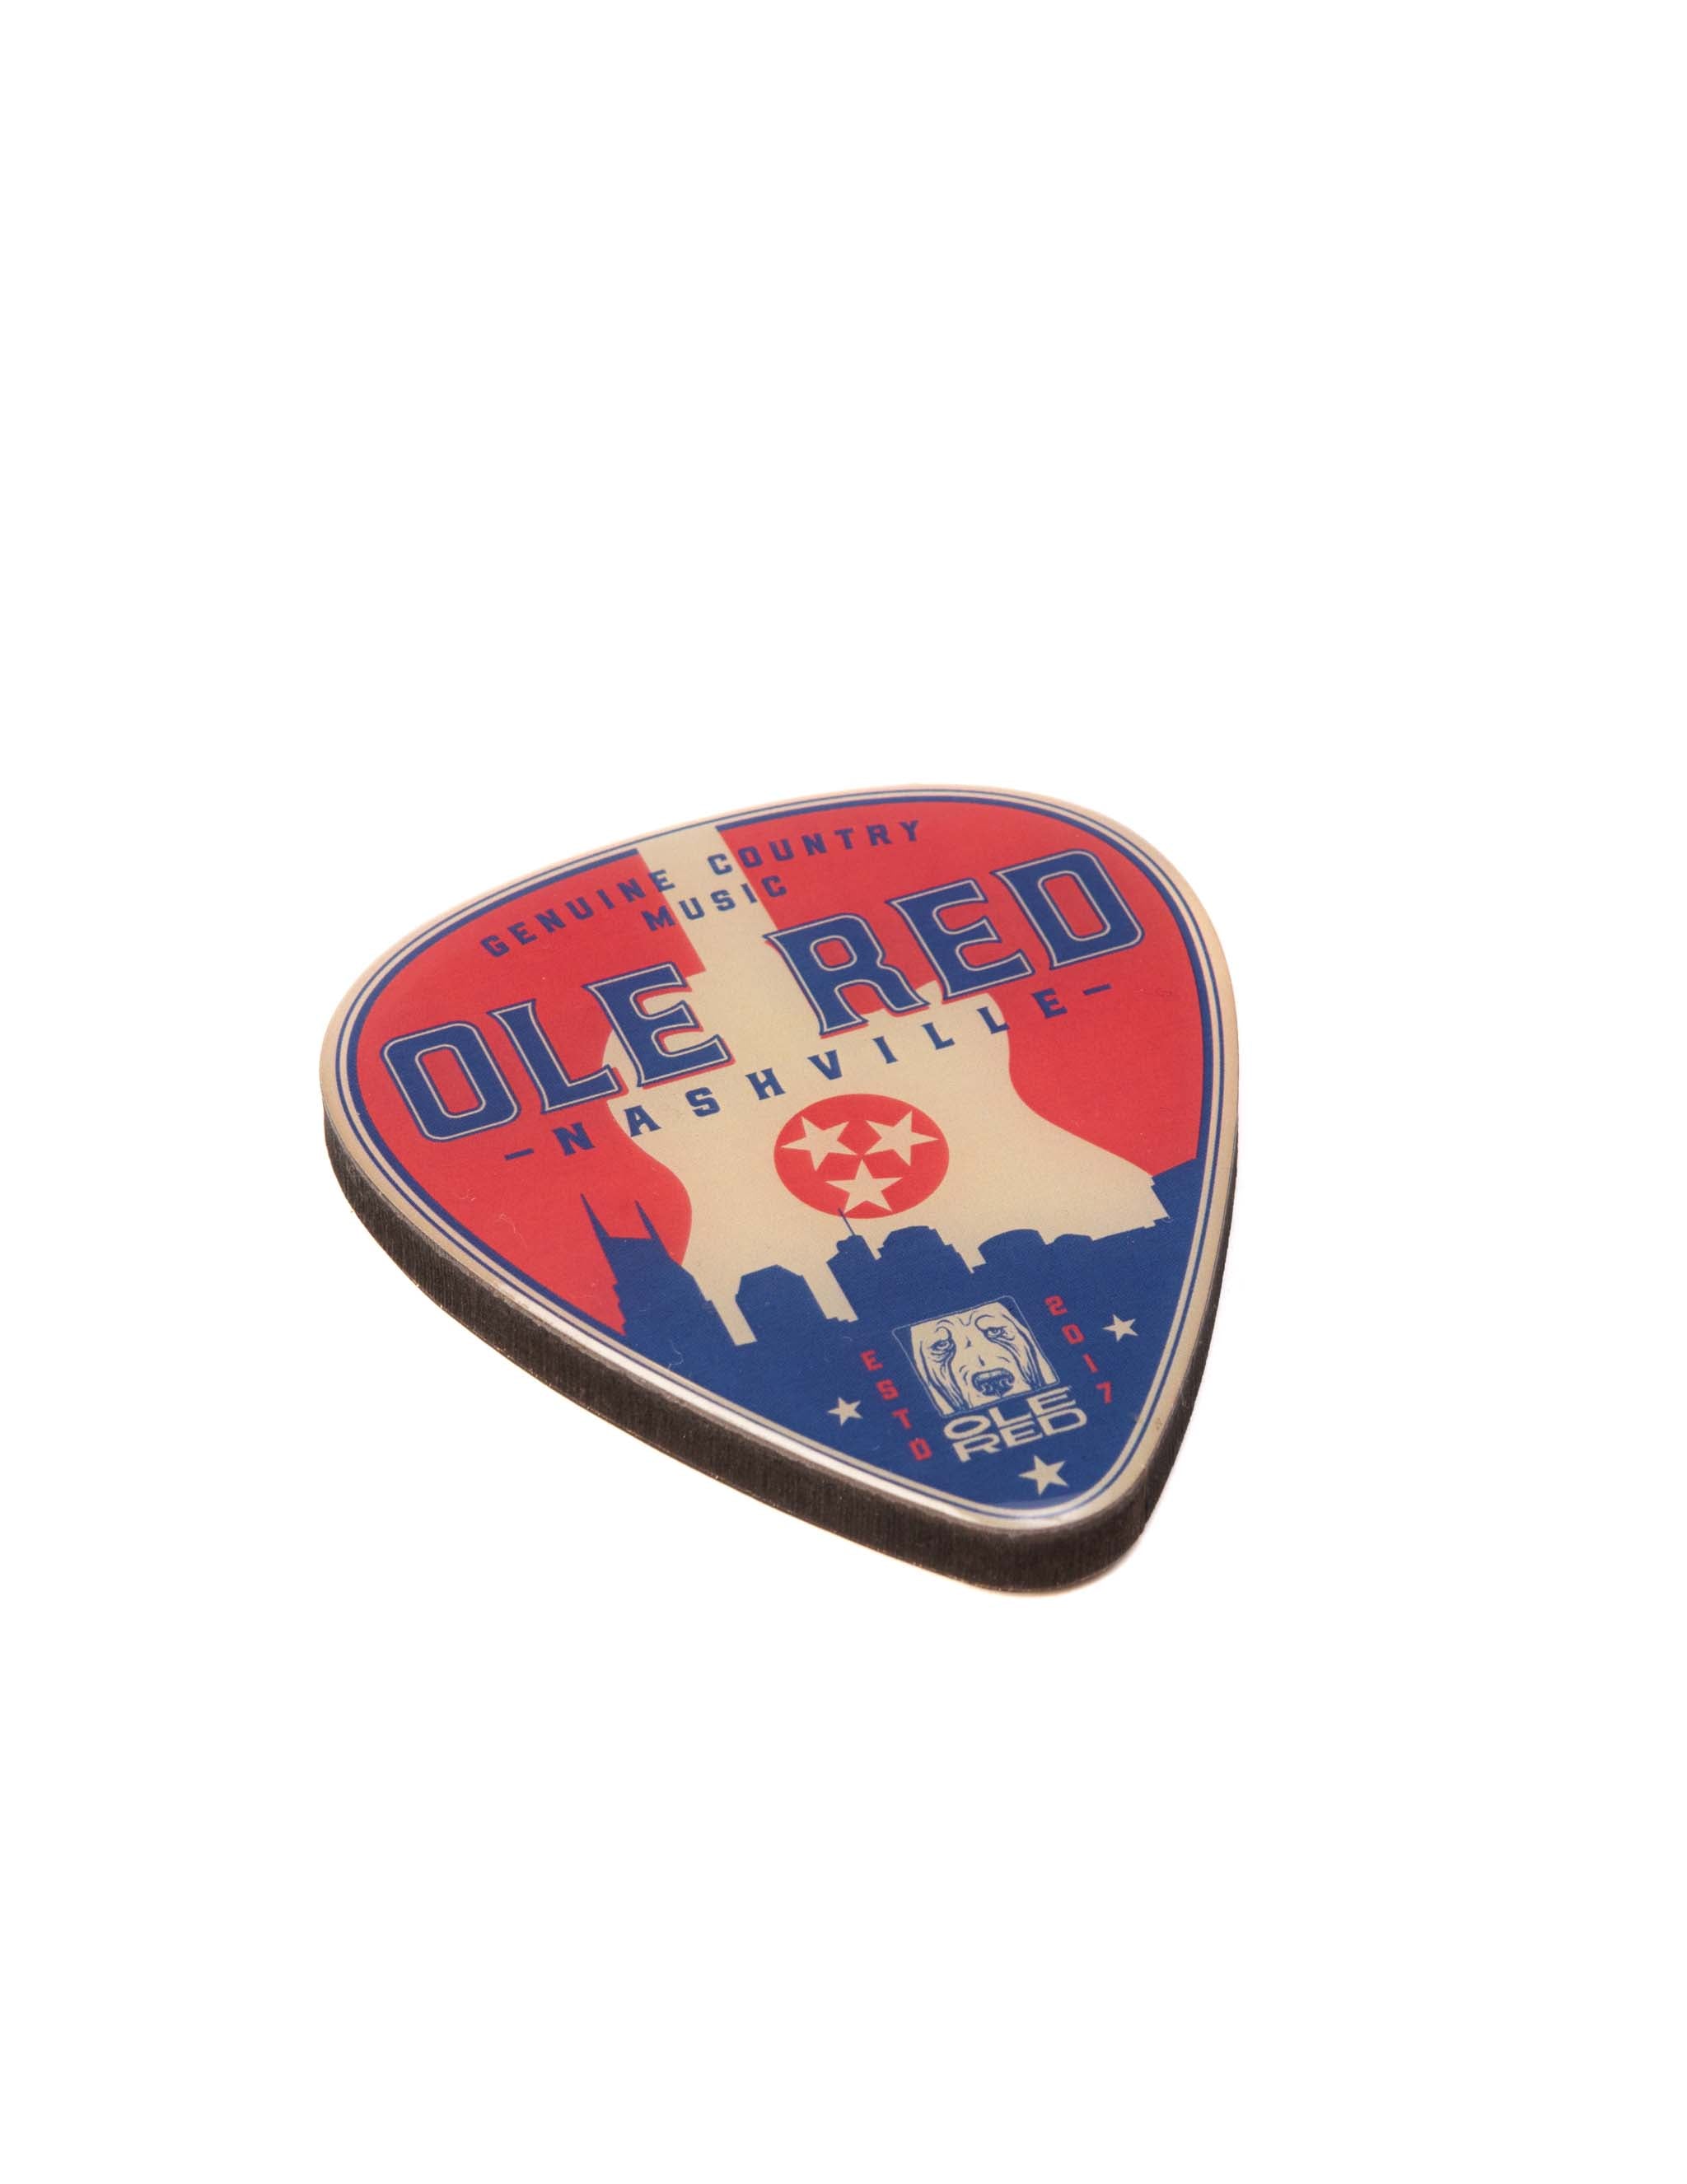 Ole Red Nashville Oversized Guitar Pick Magnet